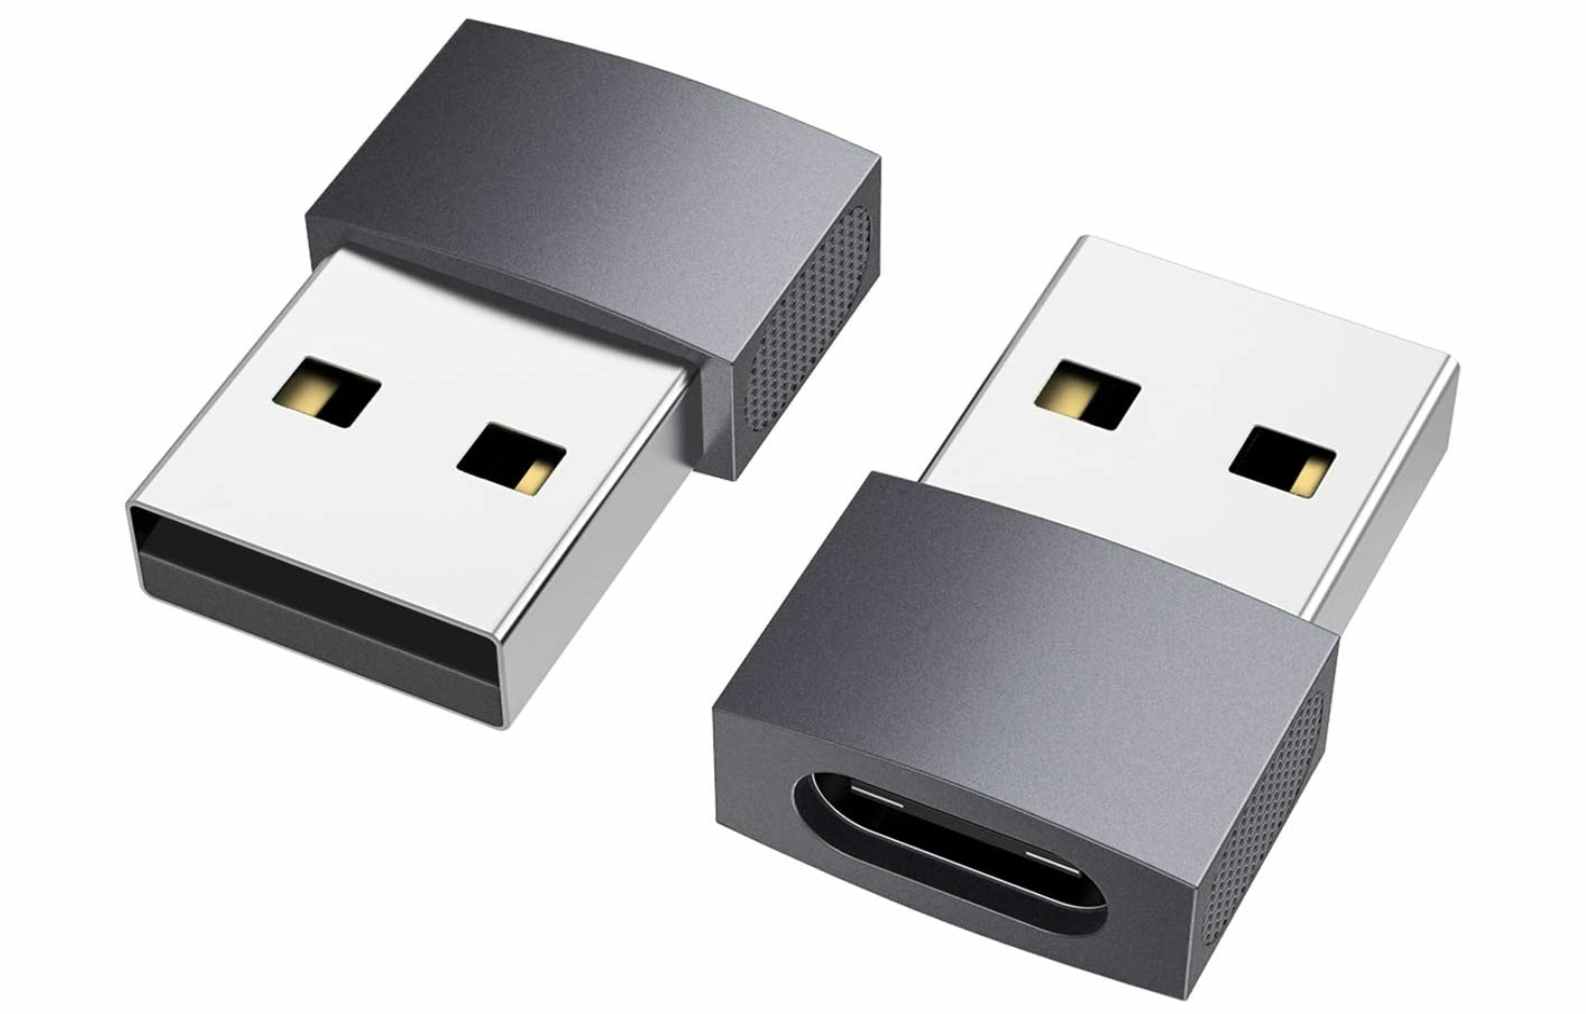  nonda USB C to USB Adapter 